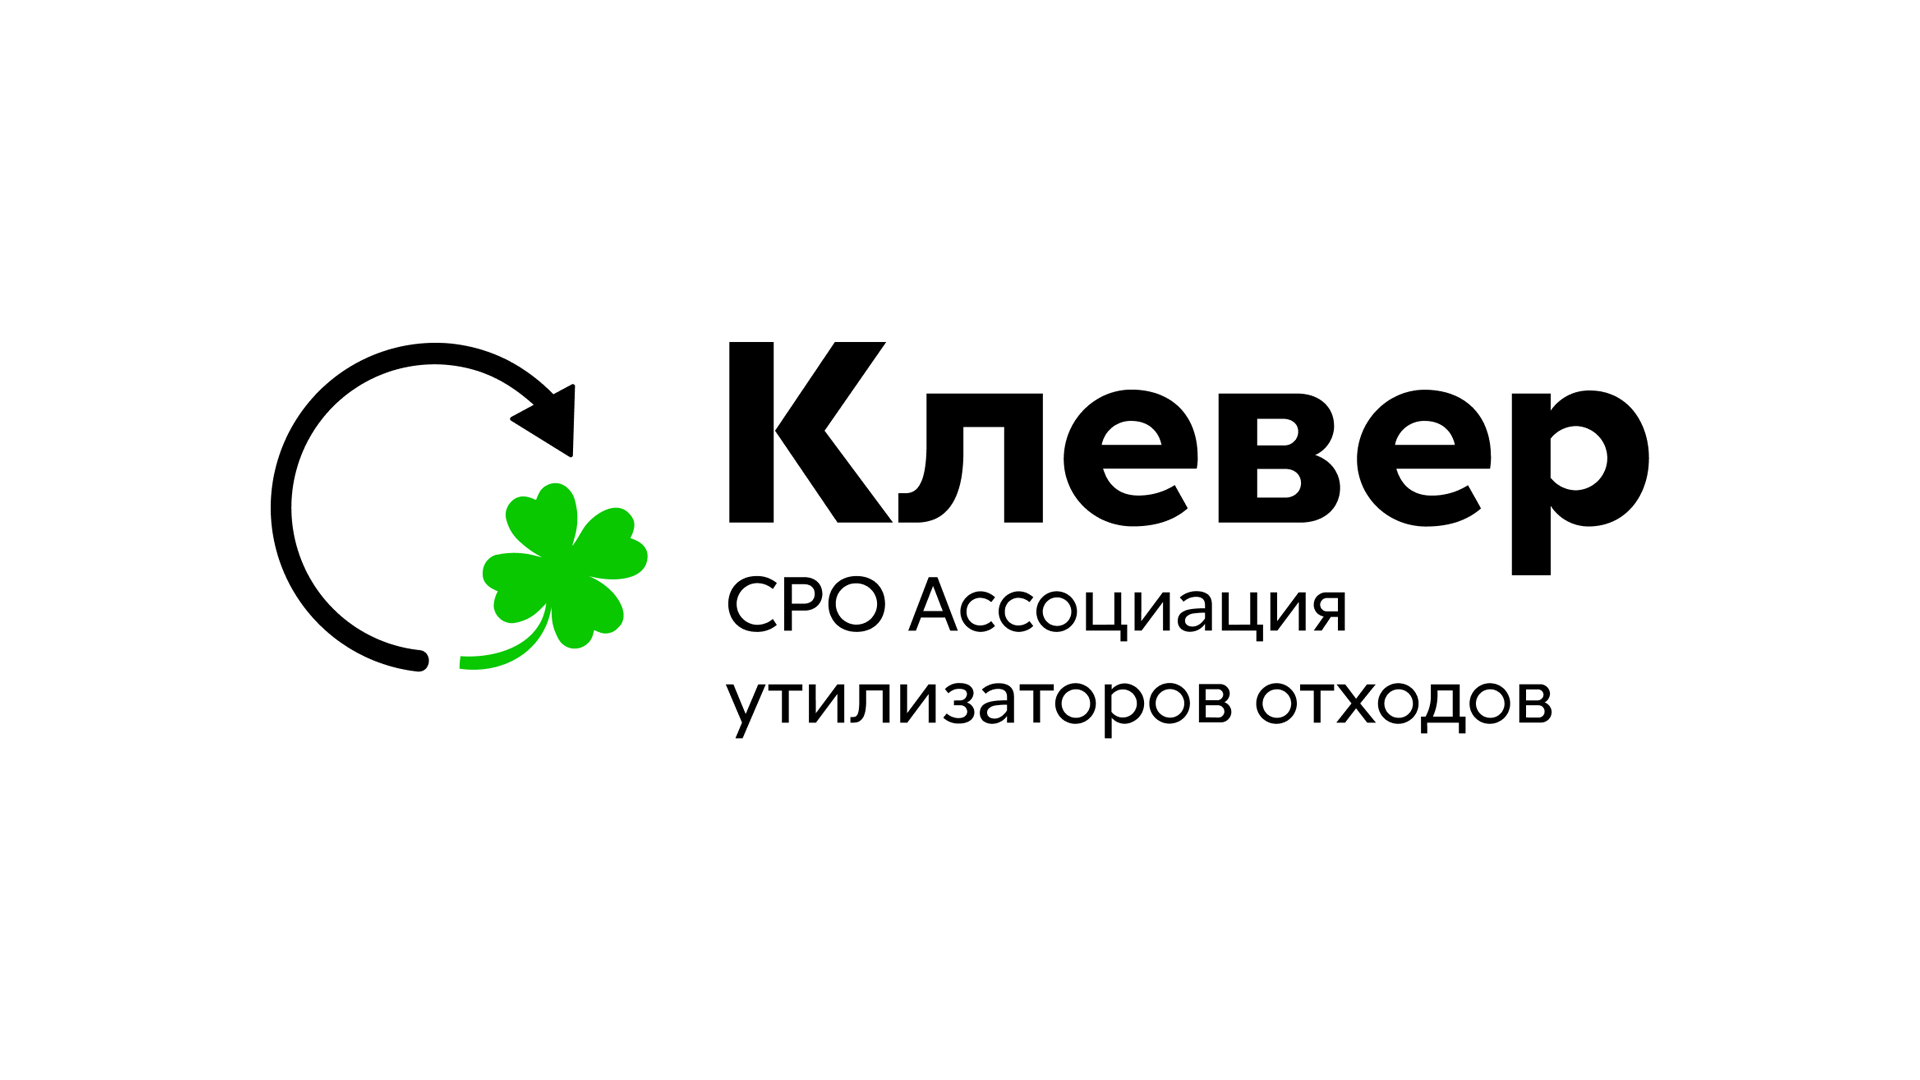 СПбМТСБ и СРО «КЛЕВЕР» подписали соглашение о сотрудничестве по рынку вторсырья - фото 1